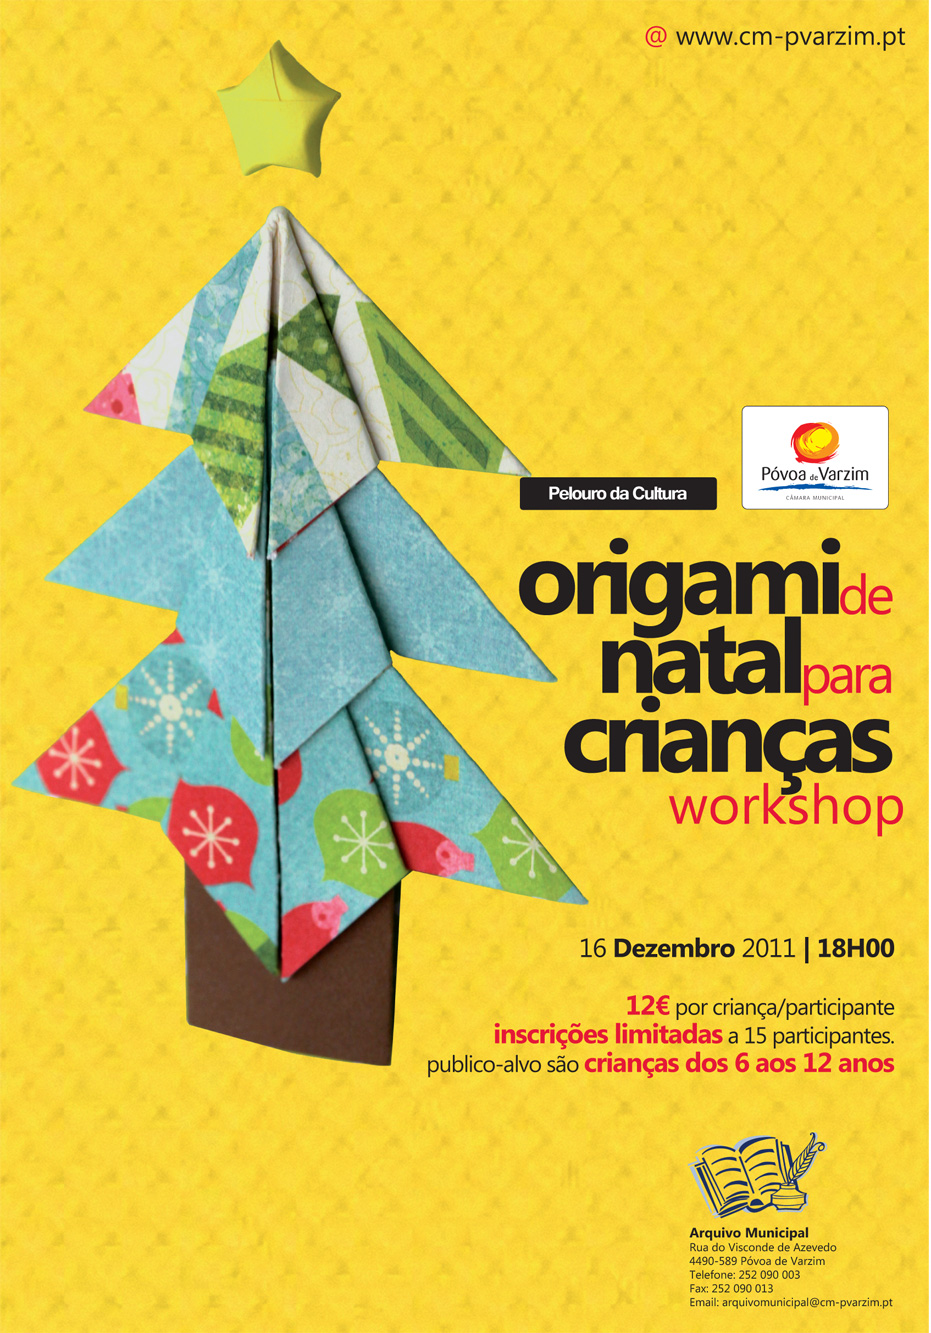 Origami de Natal para crianças